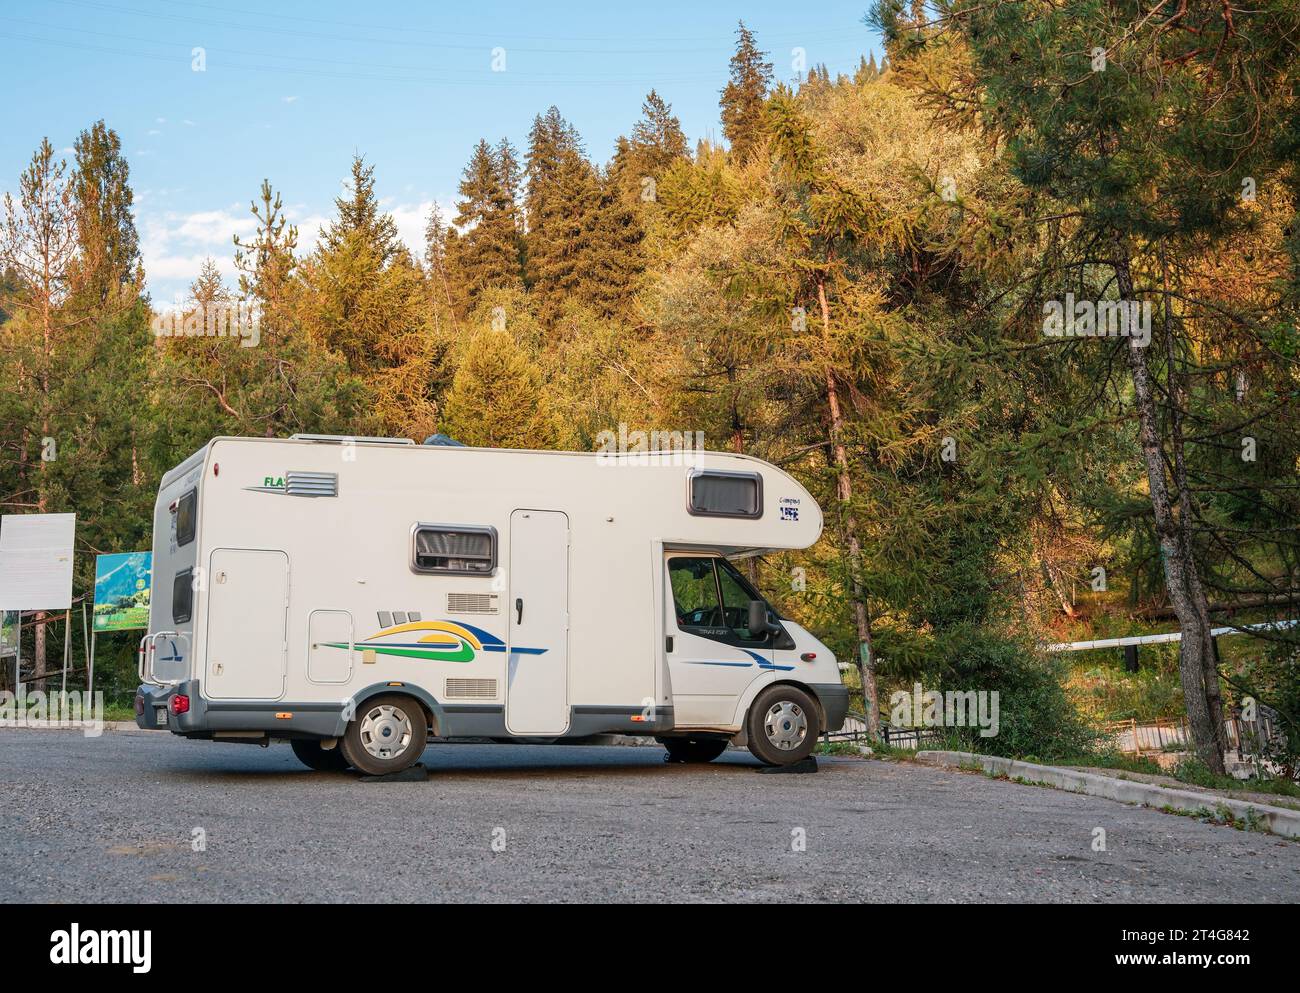 Almaty, Kazakhstan - 18 août 2023 : un camping-car Ford Transit se trouve dans un parking dans les montagnes. Voyagez seul Banque D'Images